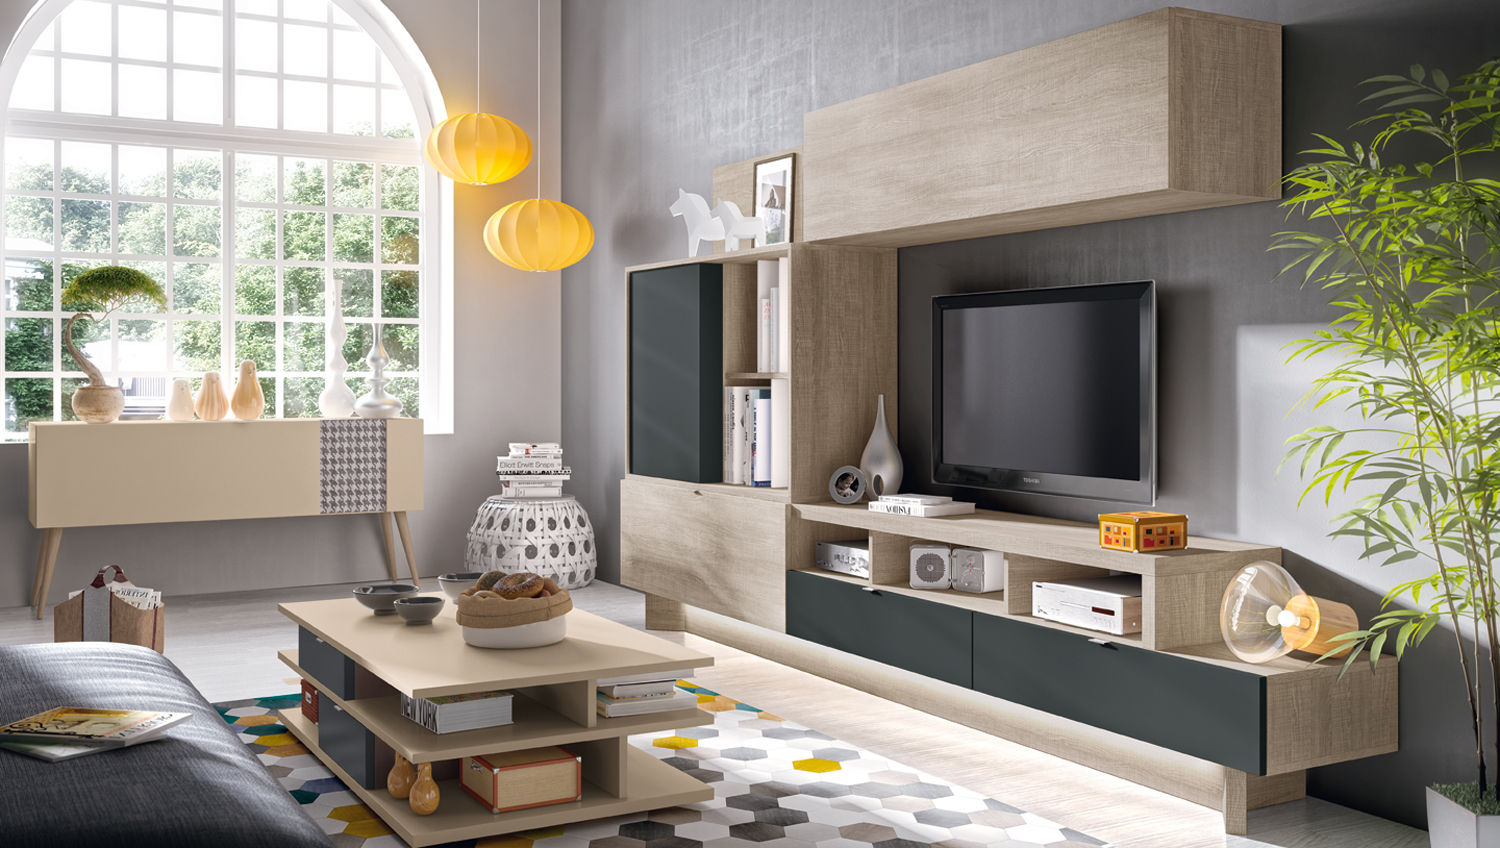 Salones modernos: funcionalidad y diseño, Merkamueble Merkamueble Salas de estar modernas TV e mobiliário